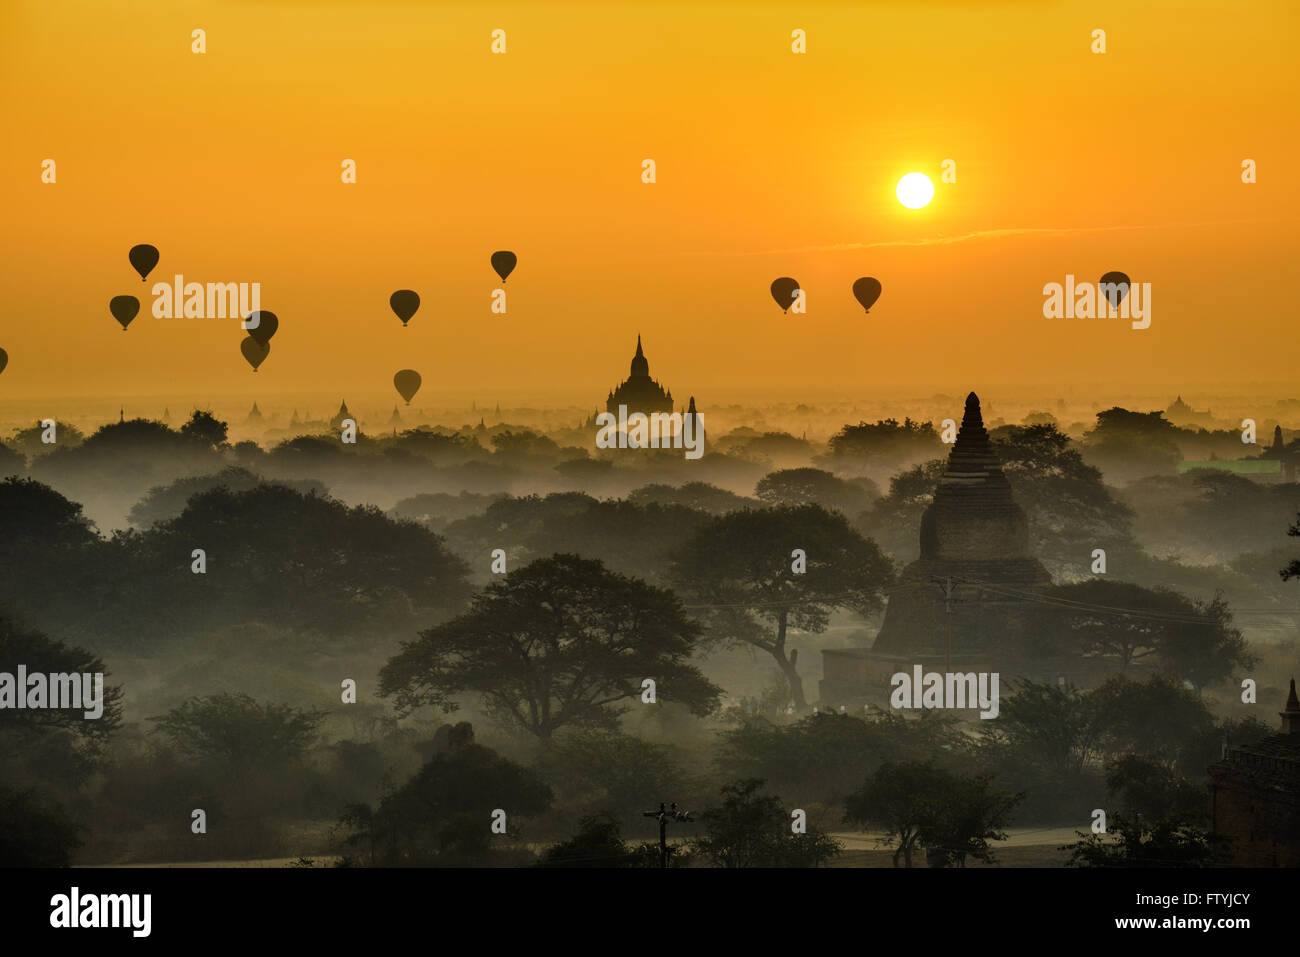 Scenic sunrise con molti i palloni ad aria calda al di sopra di Bagan in Myanmar. Bagan è una città antica con migliaia di storici t buddista Foto Stock